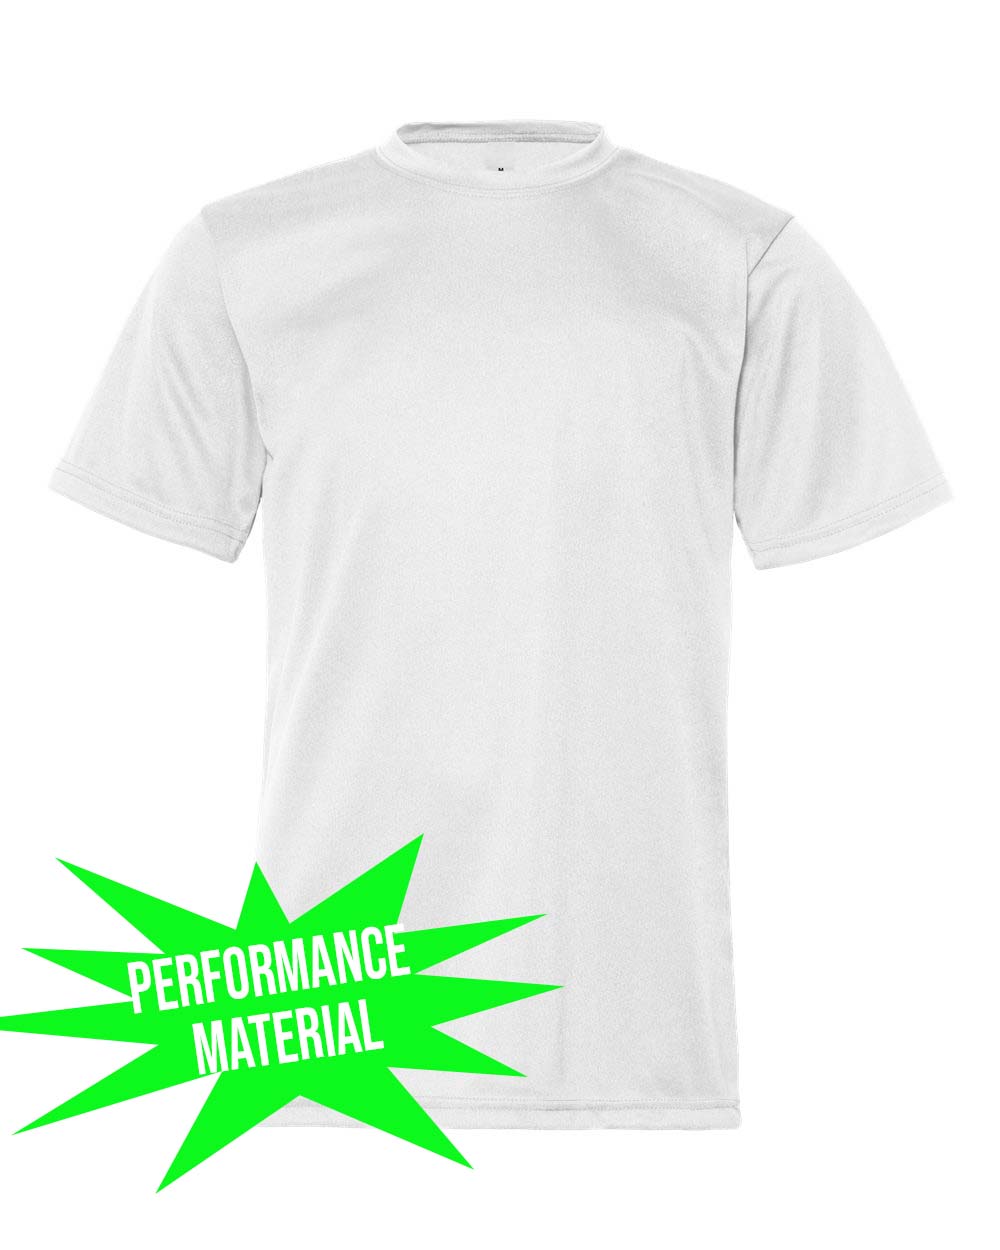 Sussex Tech Softball Performance Material T-Shirt